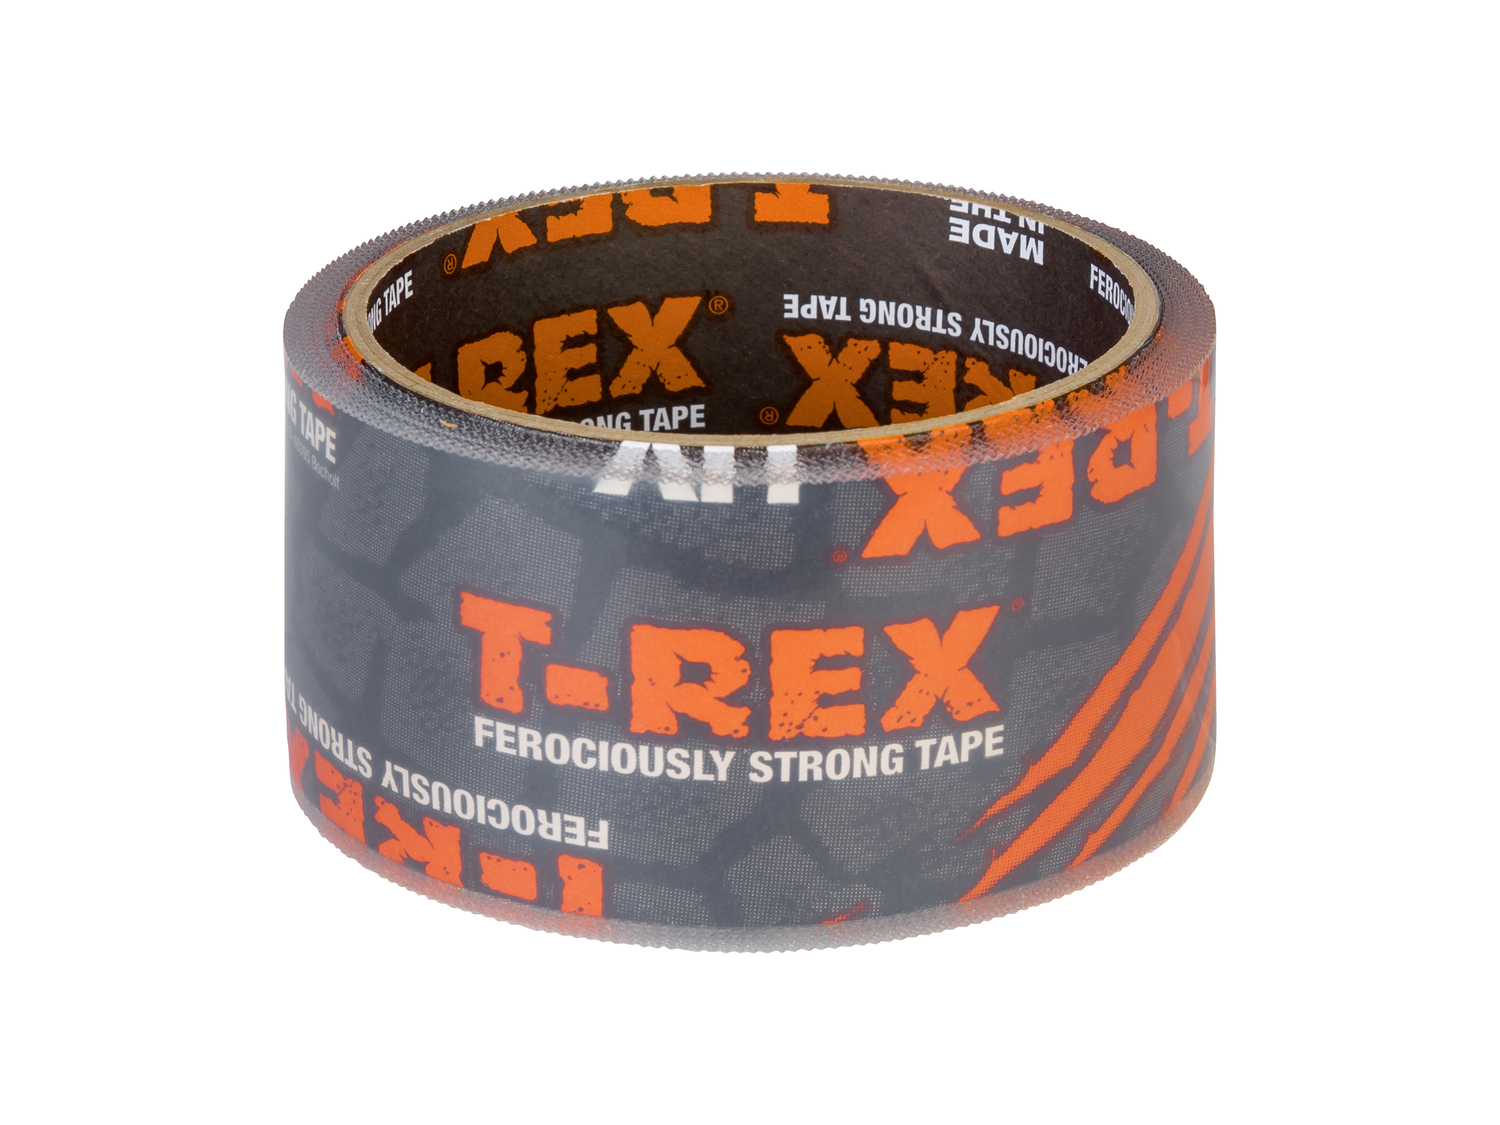 Nastro adesivo T-rex, prezzo 9.99 &#8364;  
-  50 mm x 1,5 m
Caratteristiche